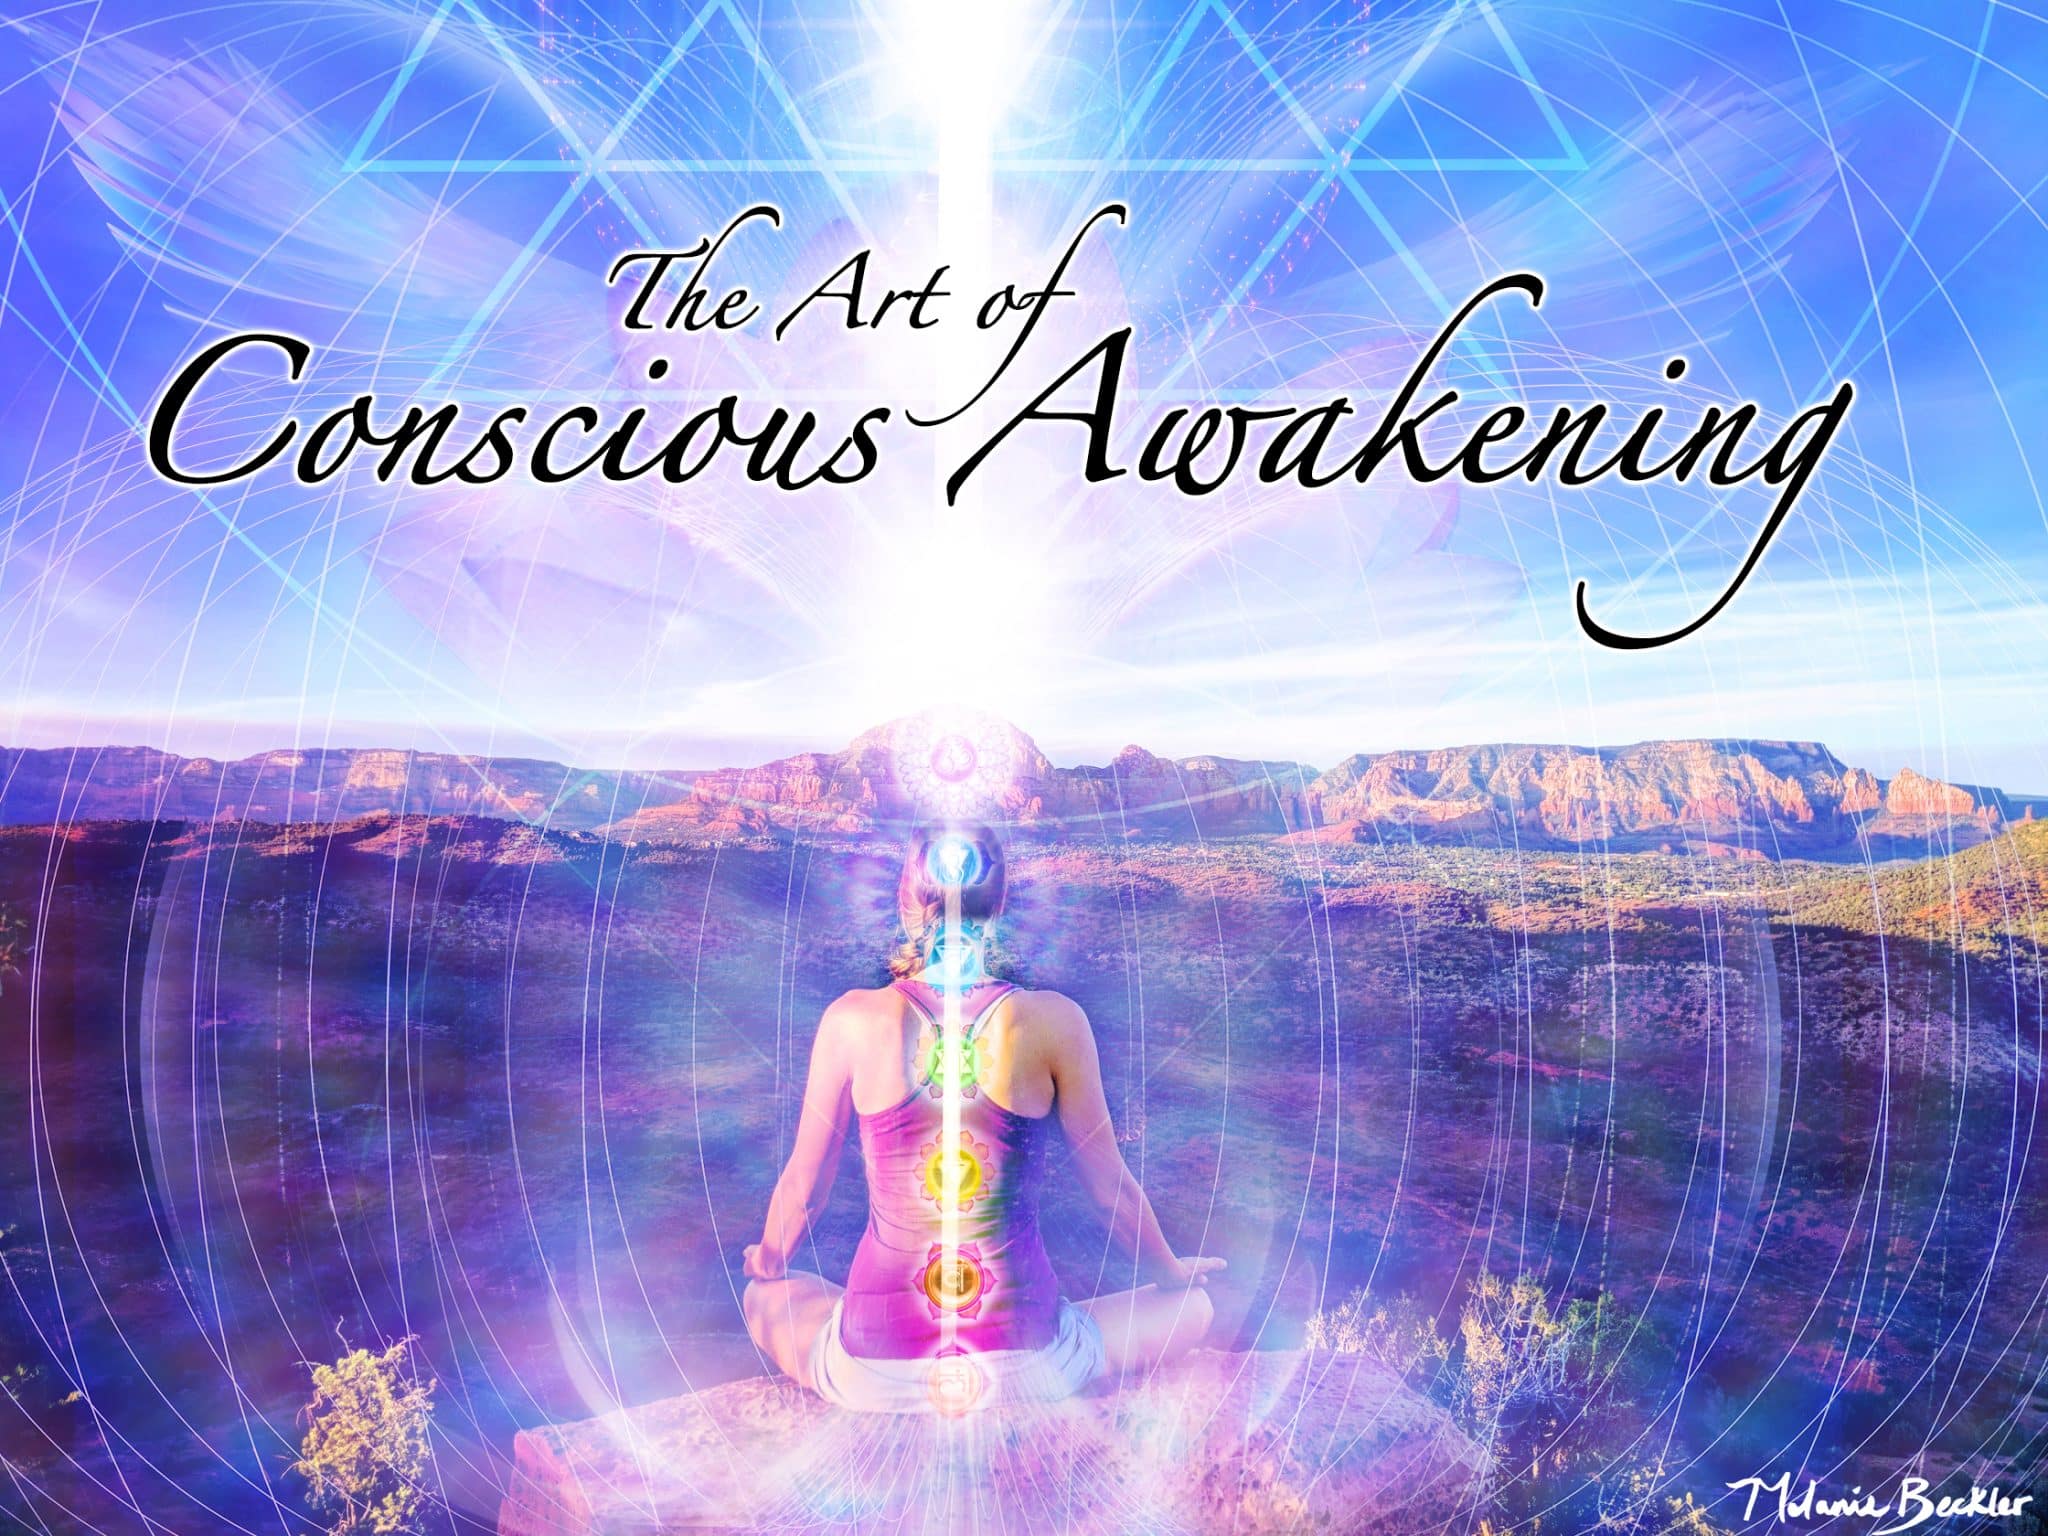 The Art of Conscious Awakening